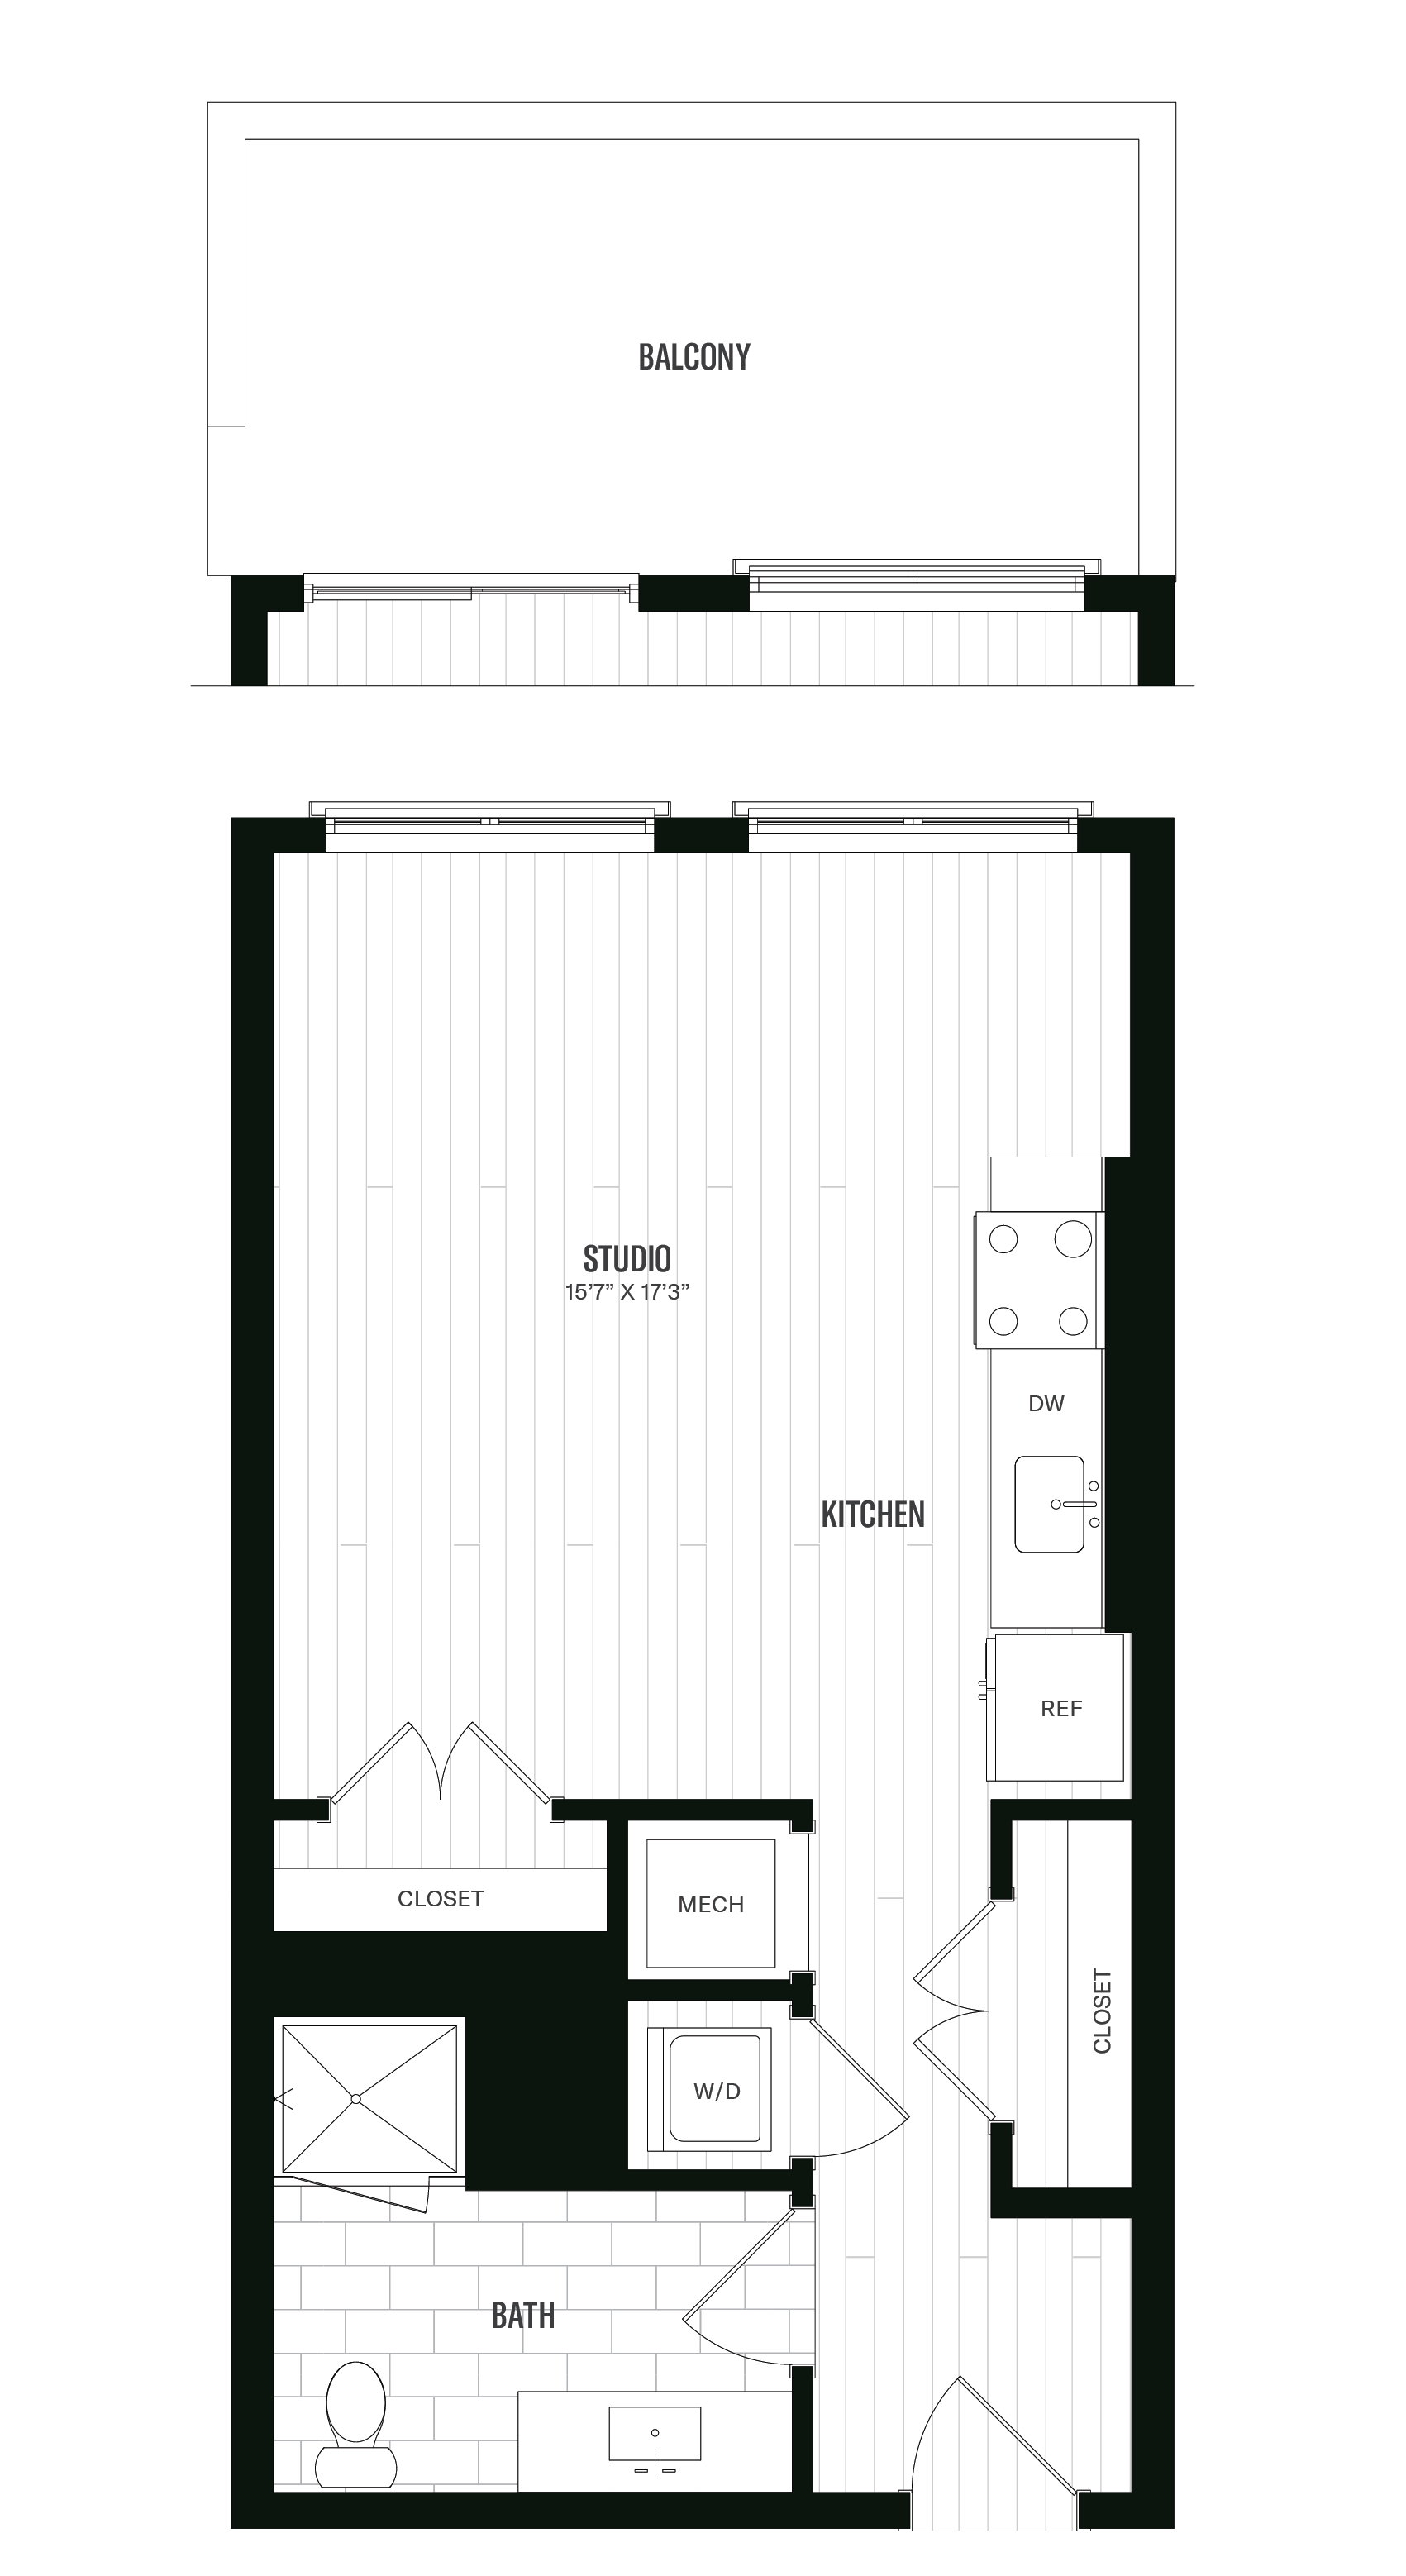 Floorplan image of unit 640